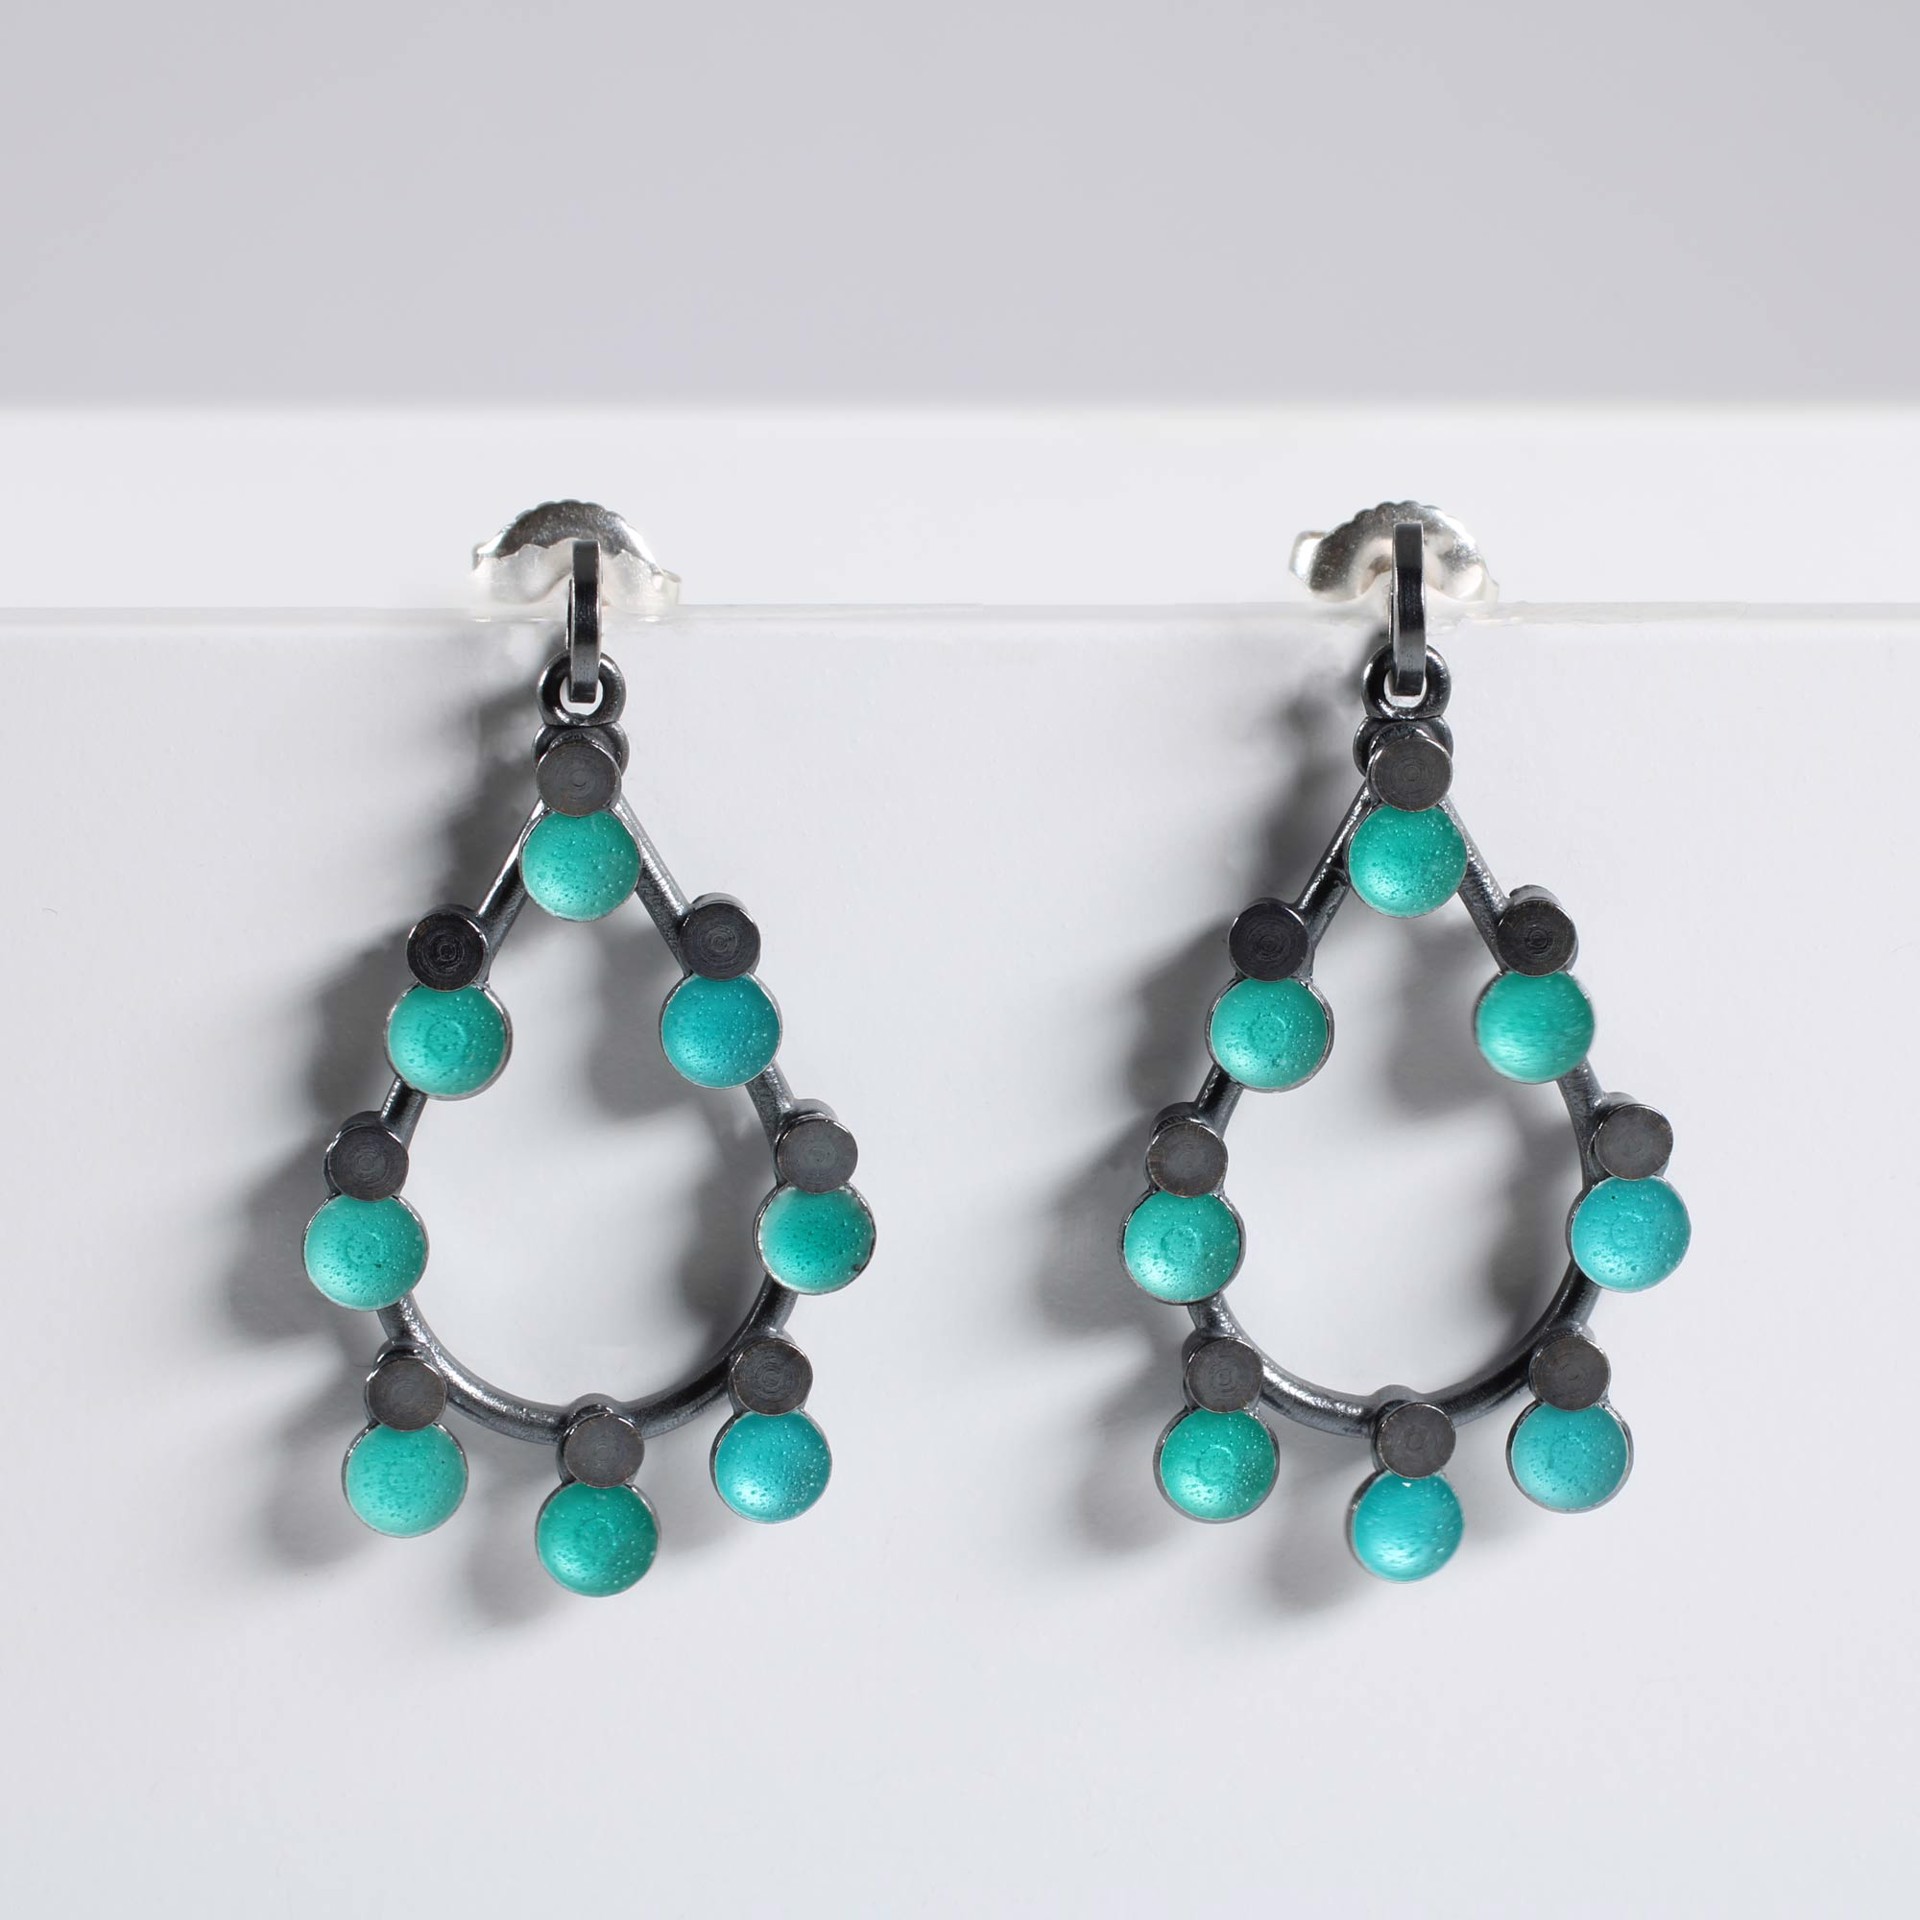 Turquoise Loop Drop Earrings by Barbara Seidenath